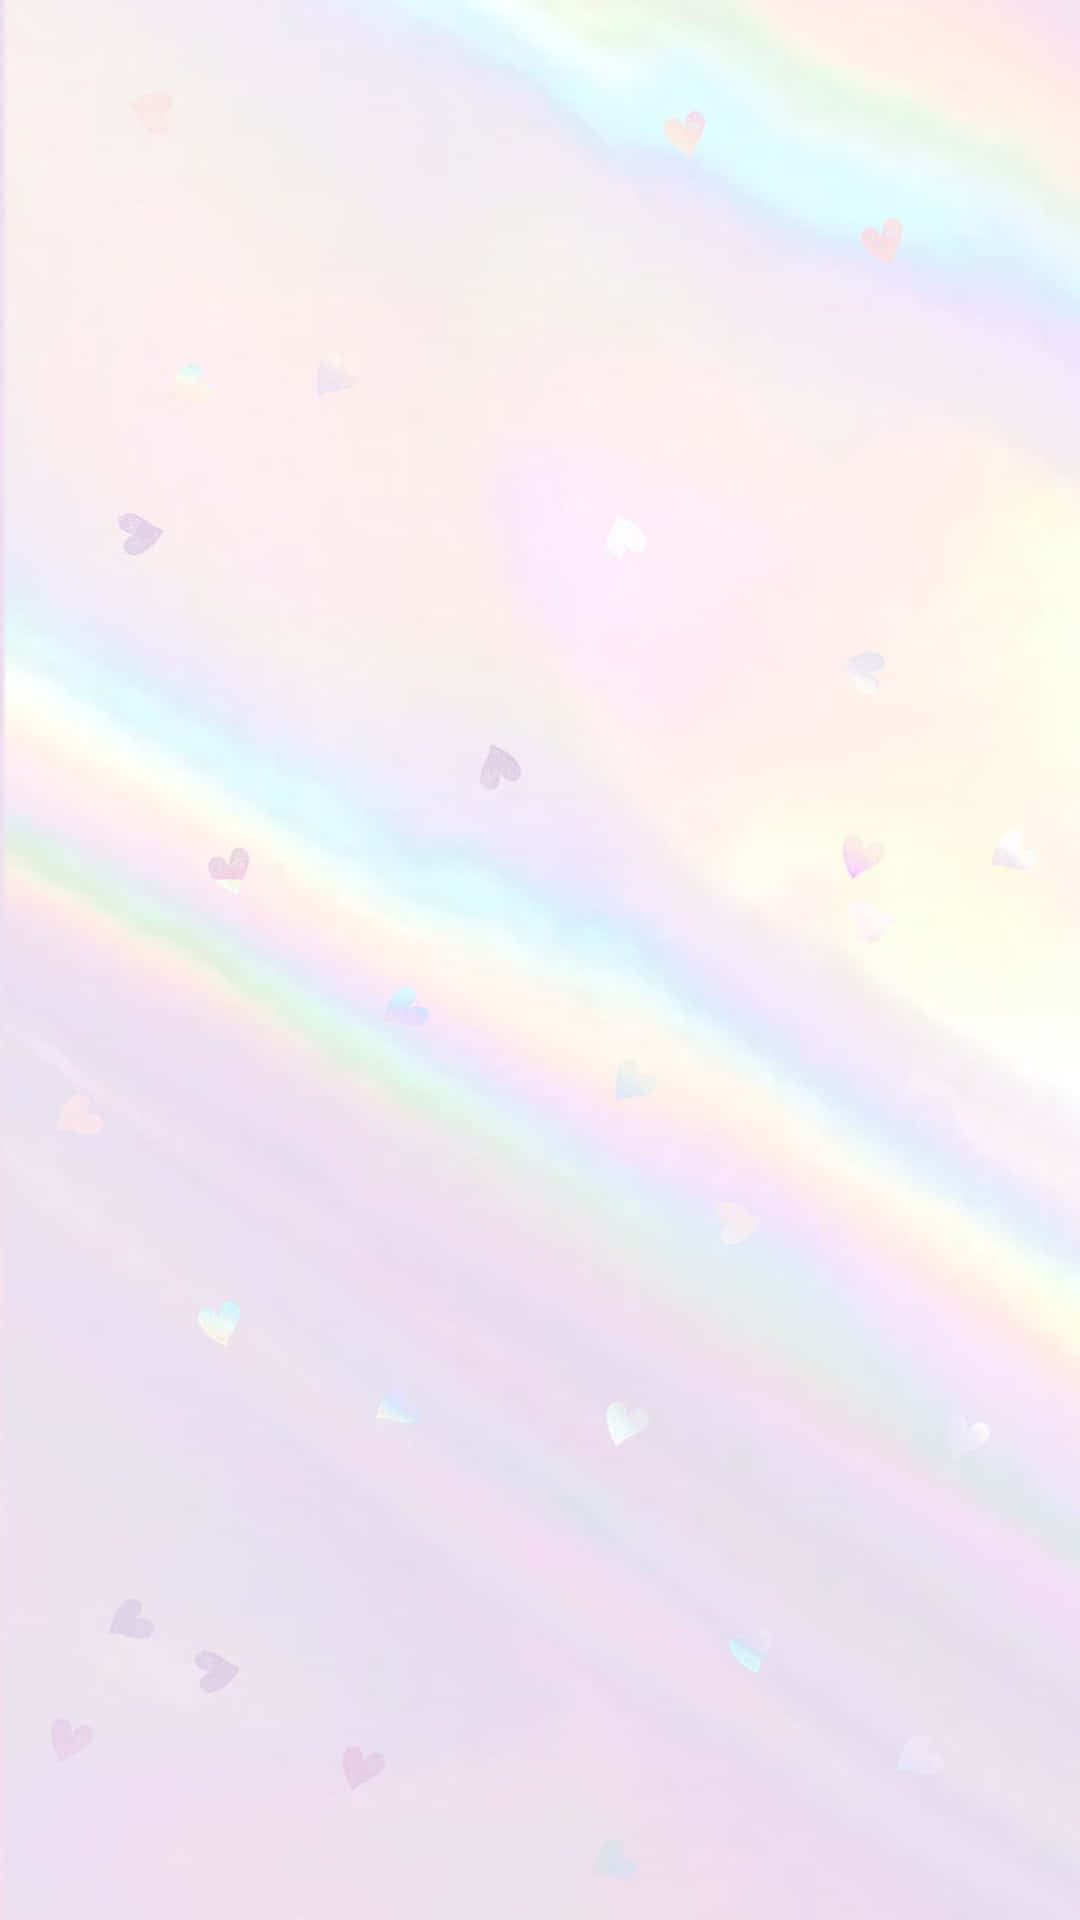 En strålende udstilling af en hvid regnbue tæt på horisonten. Wallpaper